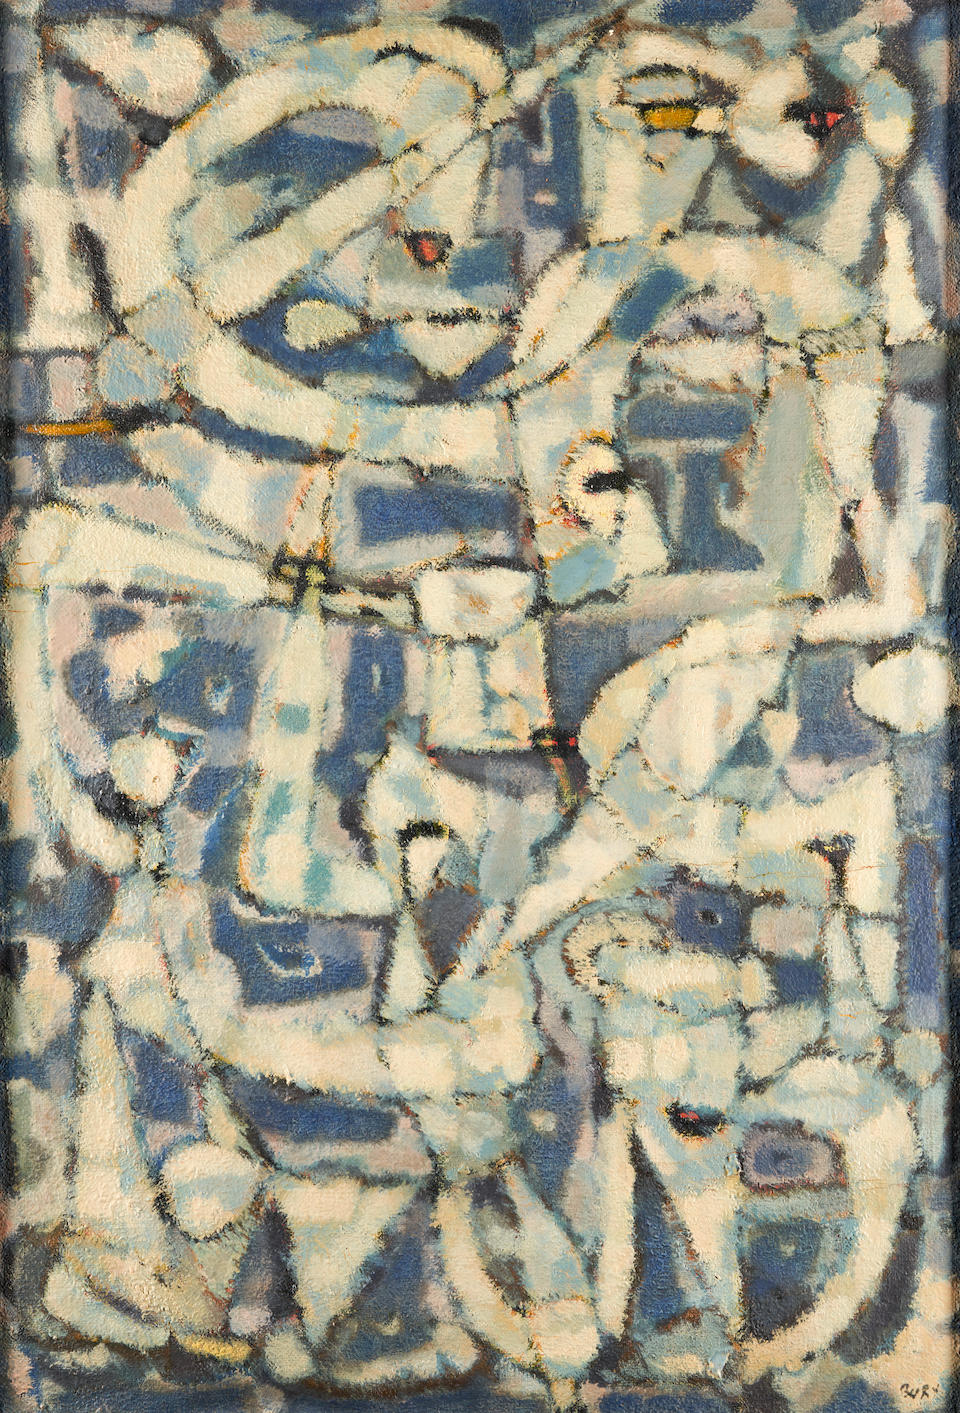 POL BURY (Belgian, 1922-2005) Untitled (framed 68.0 x 48.0 x 2.0 cm (26 3/4 x 18 3/4 x 3/4 in).)